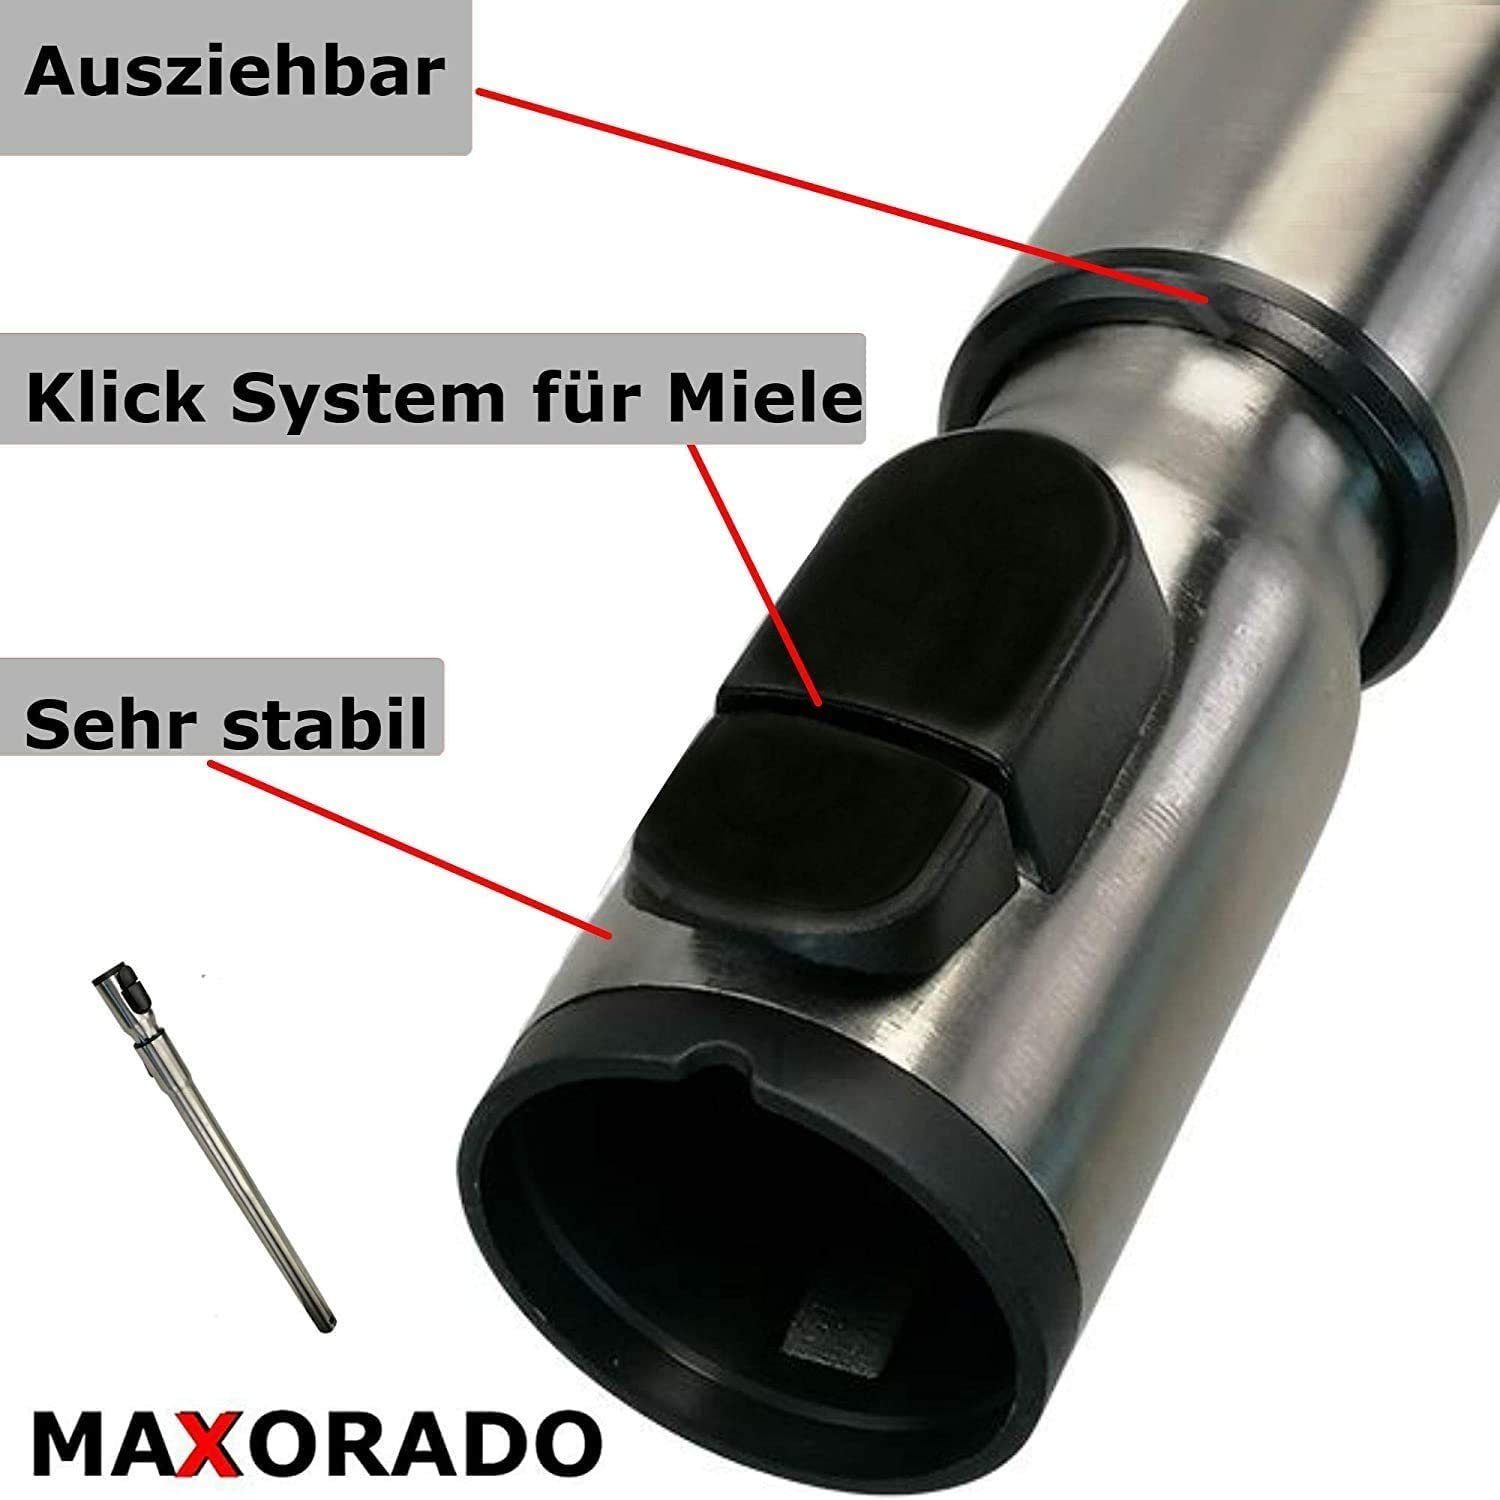 2 Staubsauger-Rohr C Bürste Kombibodendüse Miele C1 1 Maxorado 3 Staubsauger Serie für Compact